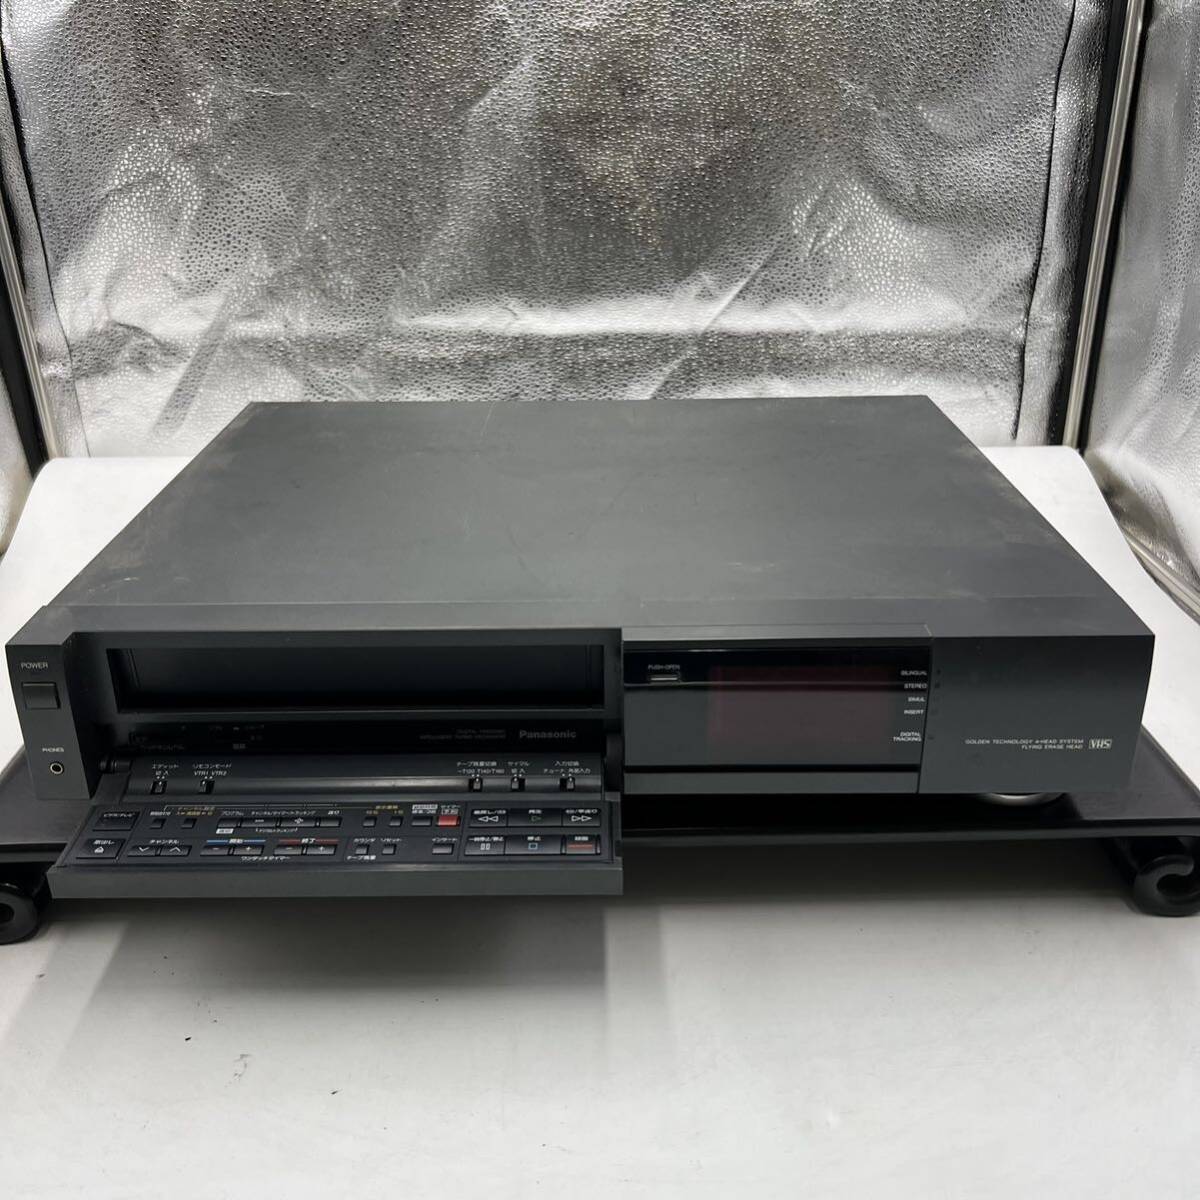 C838 Panasonic パナソニック VHSビデオデッキ Hi-Fi ステレオ NV-F400 コード無し ジャンク_画像1